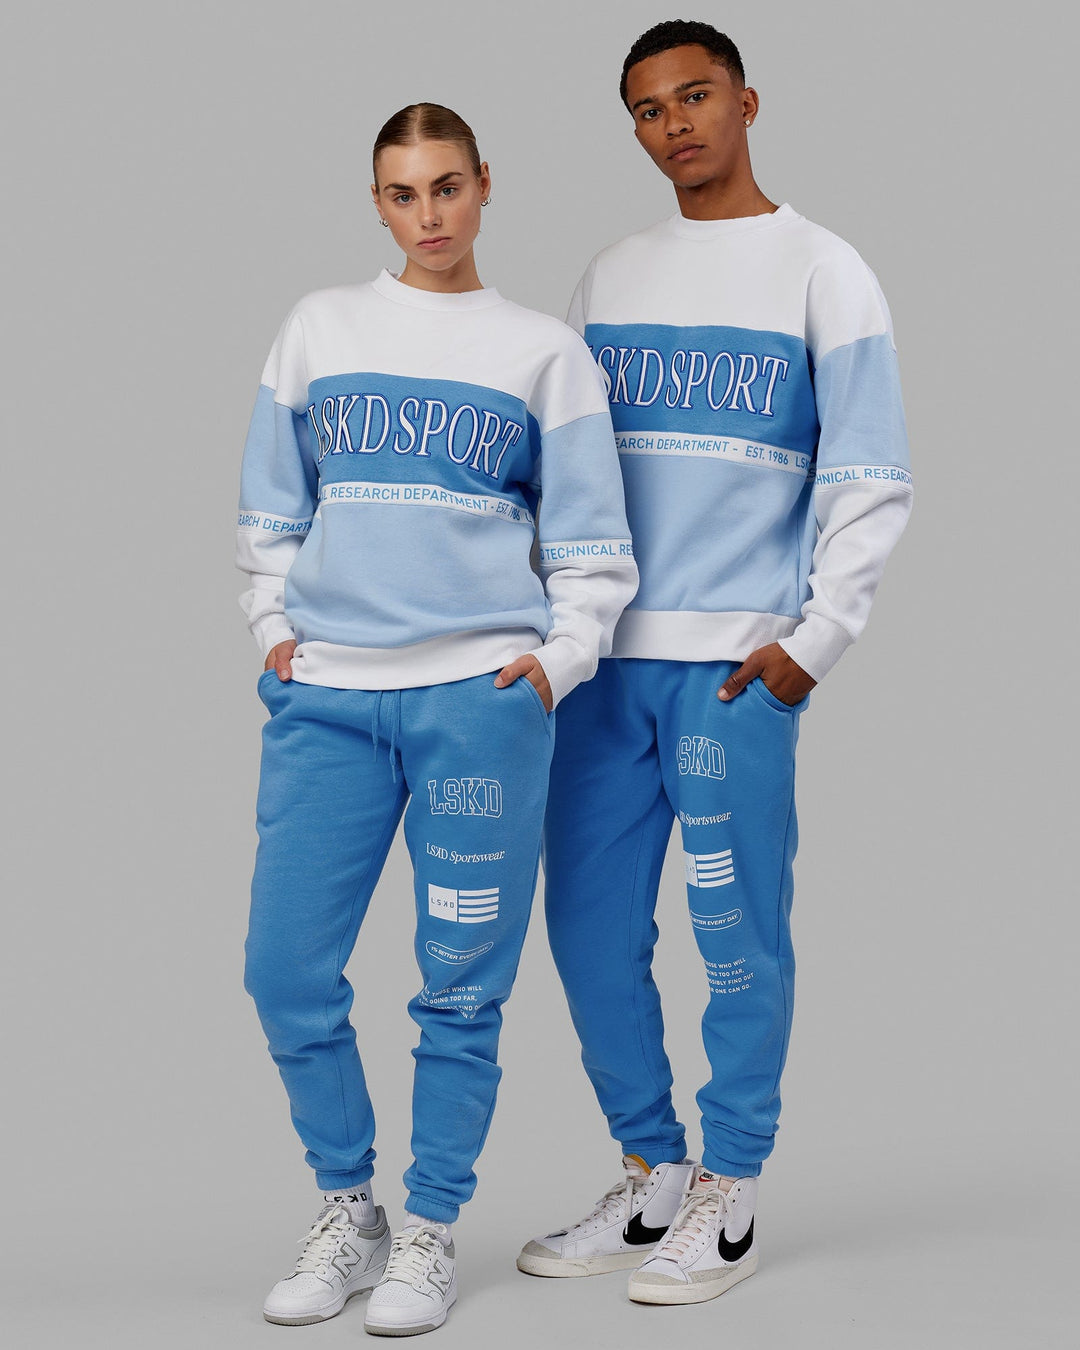 Duo wearing Unisex Academy Track Pant - Azure Blue